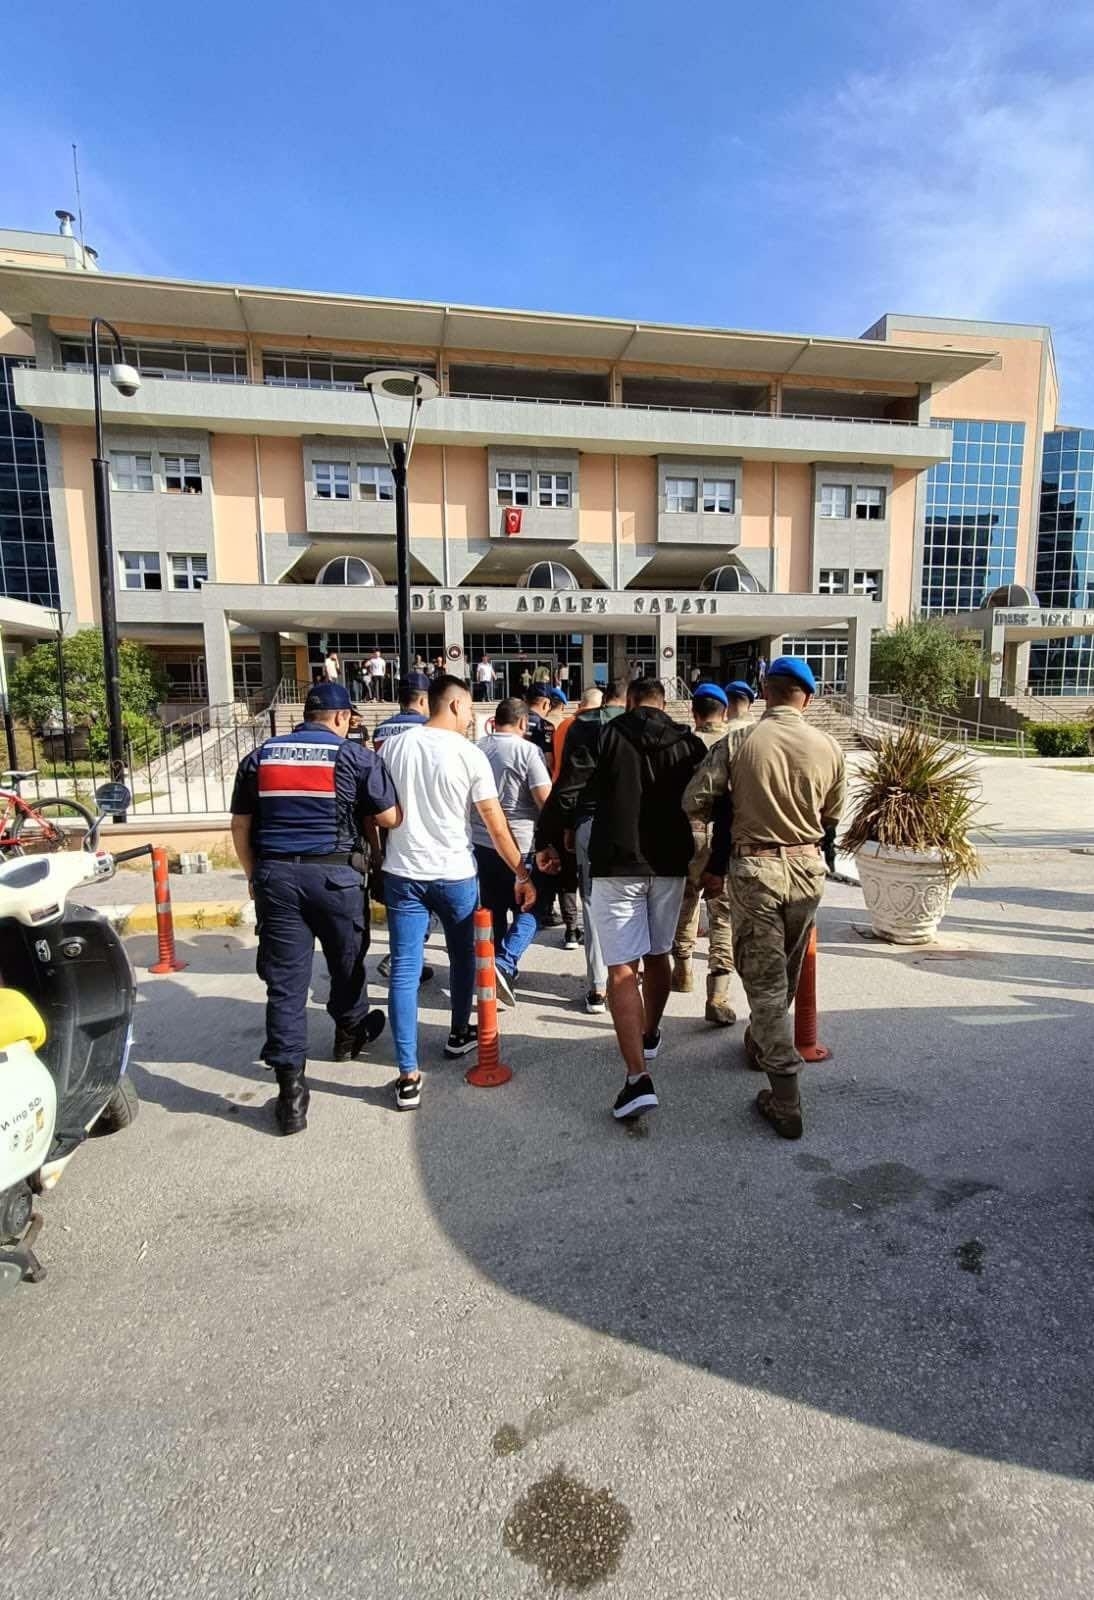 Edirne'de 481 kaçak göçmen yakalandı